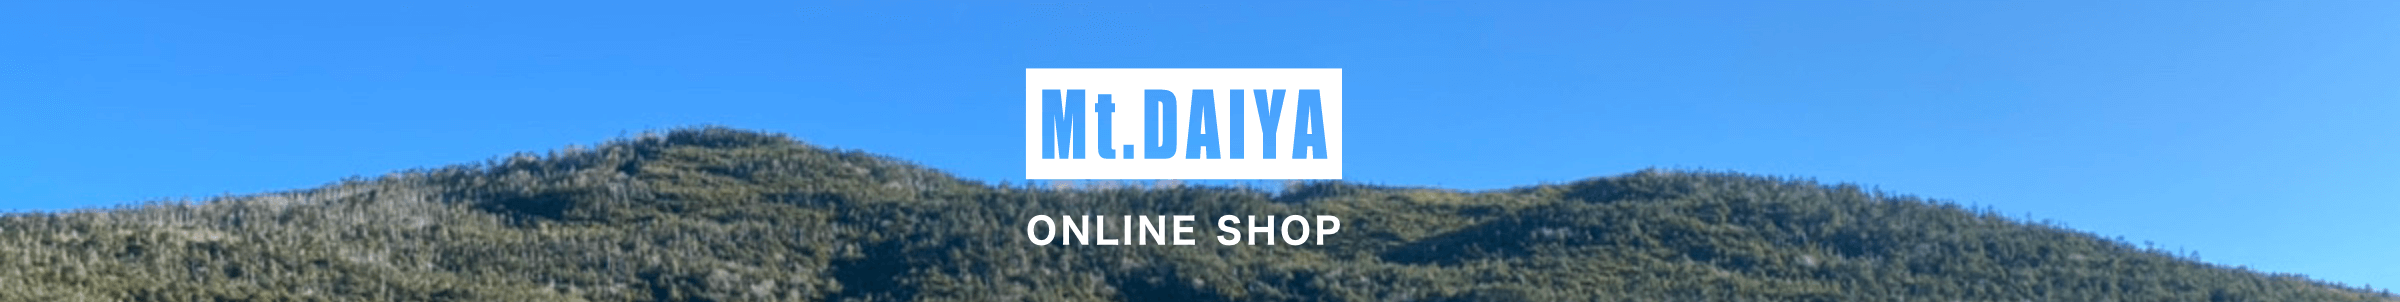 Mt.DAIYA ONLINE SHOP